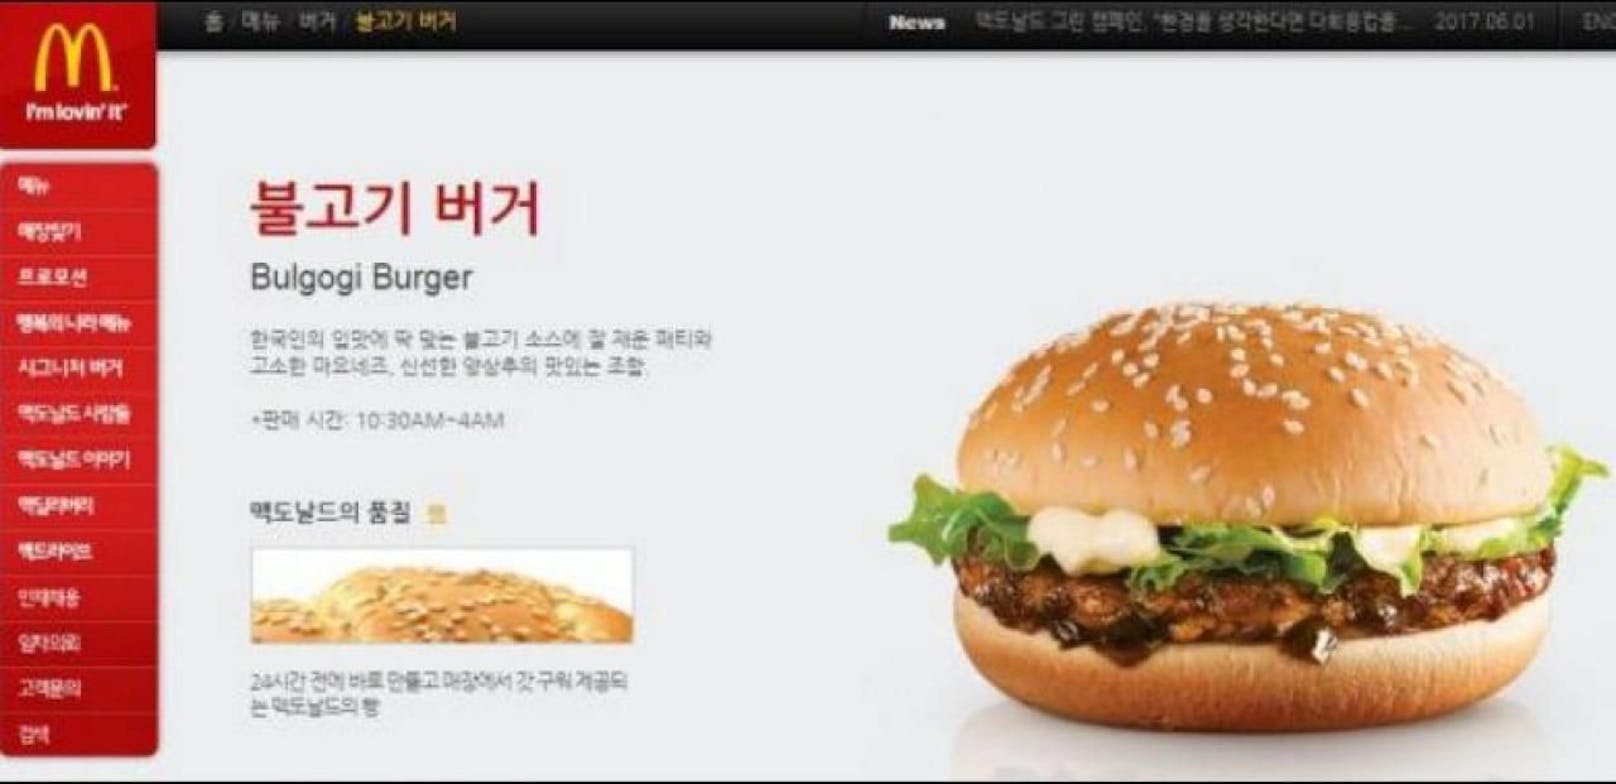 Der Bulgogi Burger auf der Webseite von McDonald's Korea. Er soll die Krankheitsfälle ausgelöst haben.